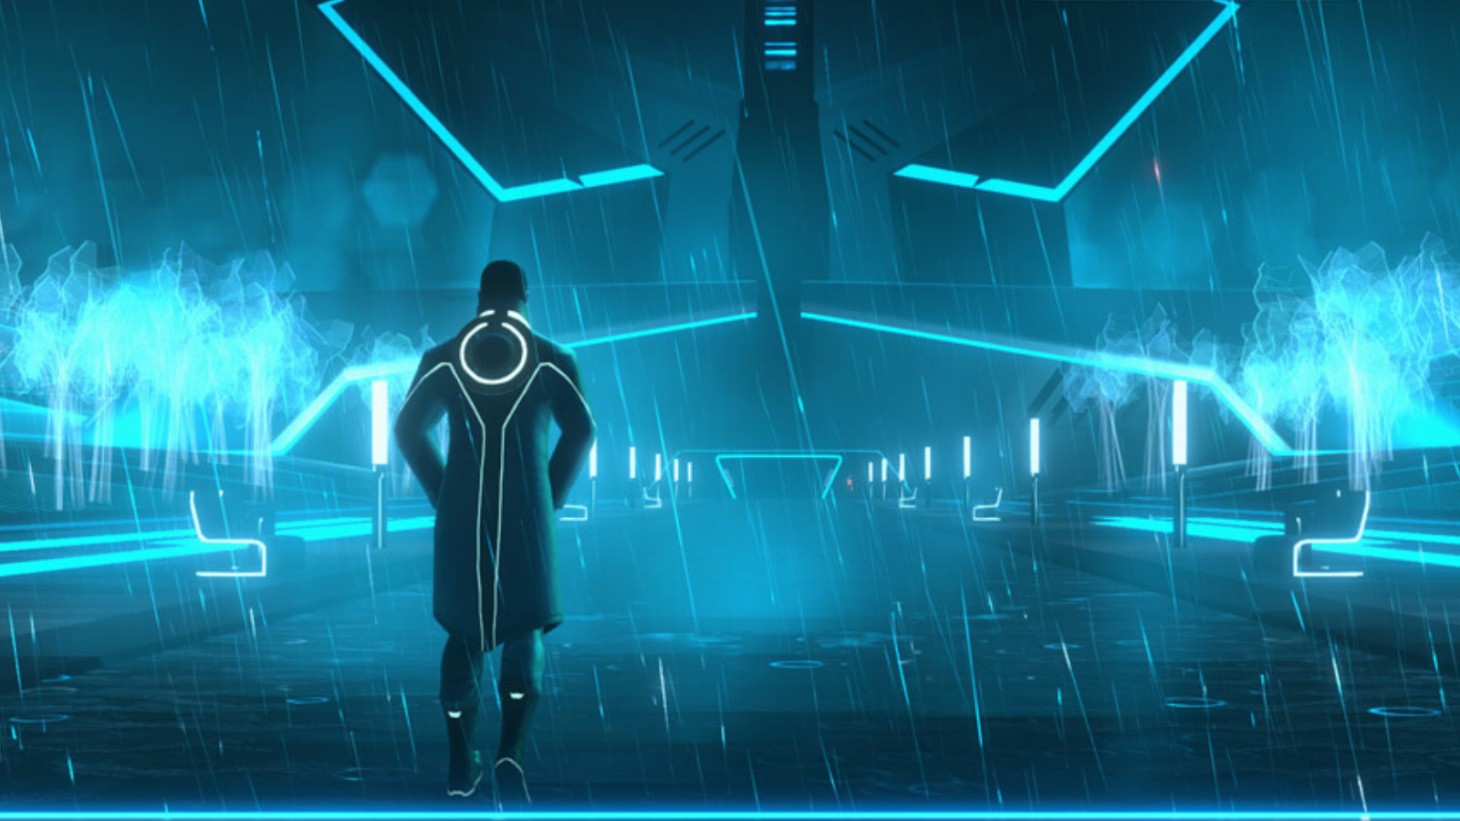 Tron: Identity erhält Veröffentlichungsdatum im April in neuem Gameplay-Trailer